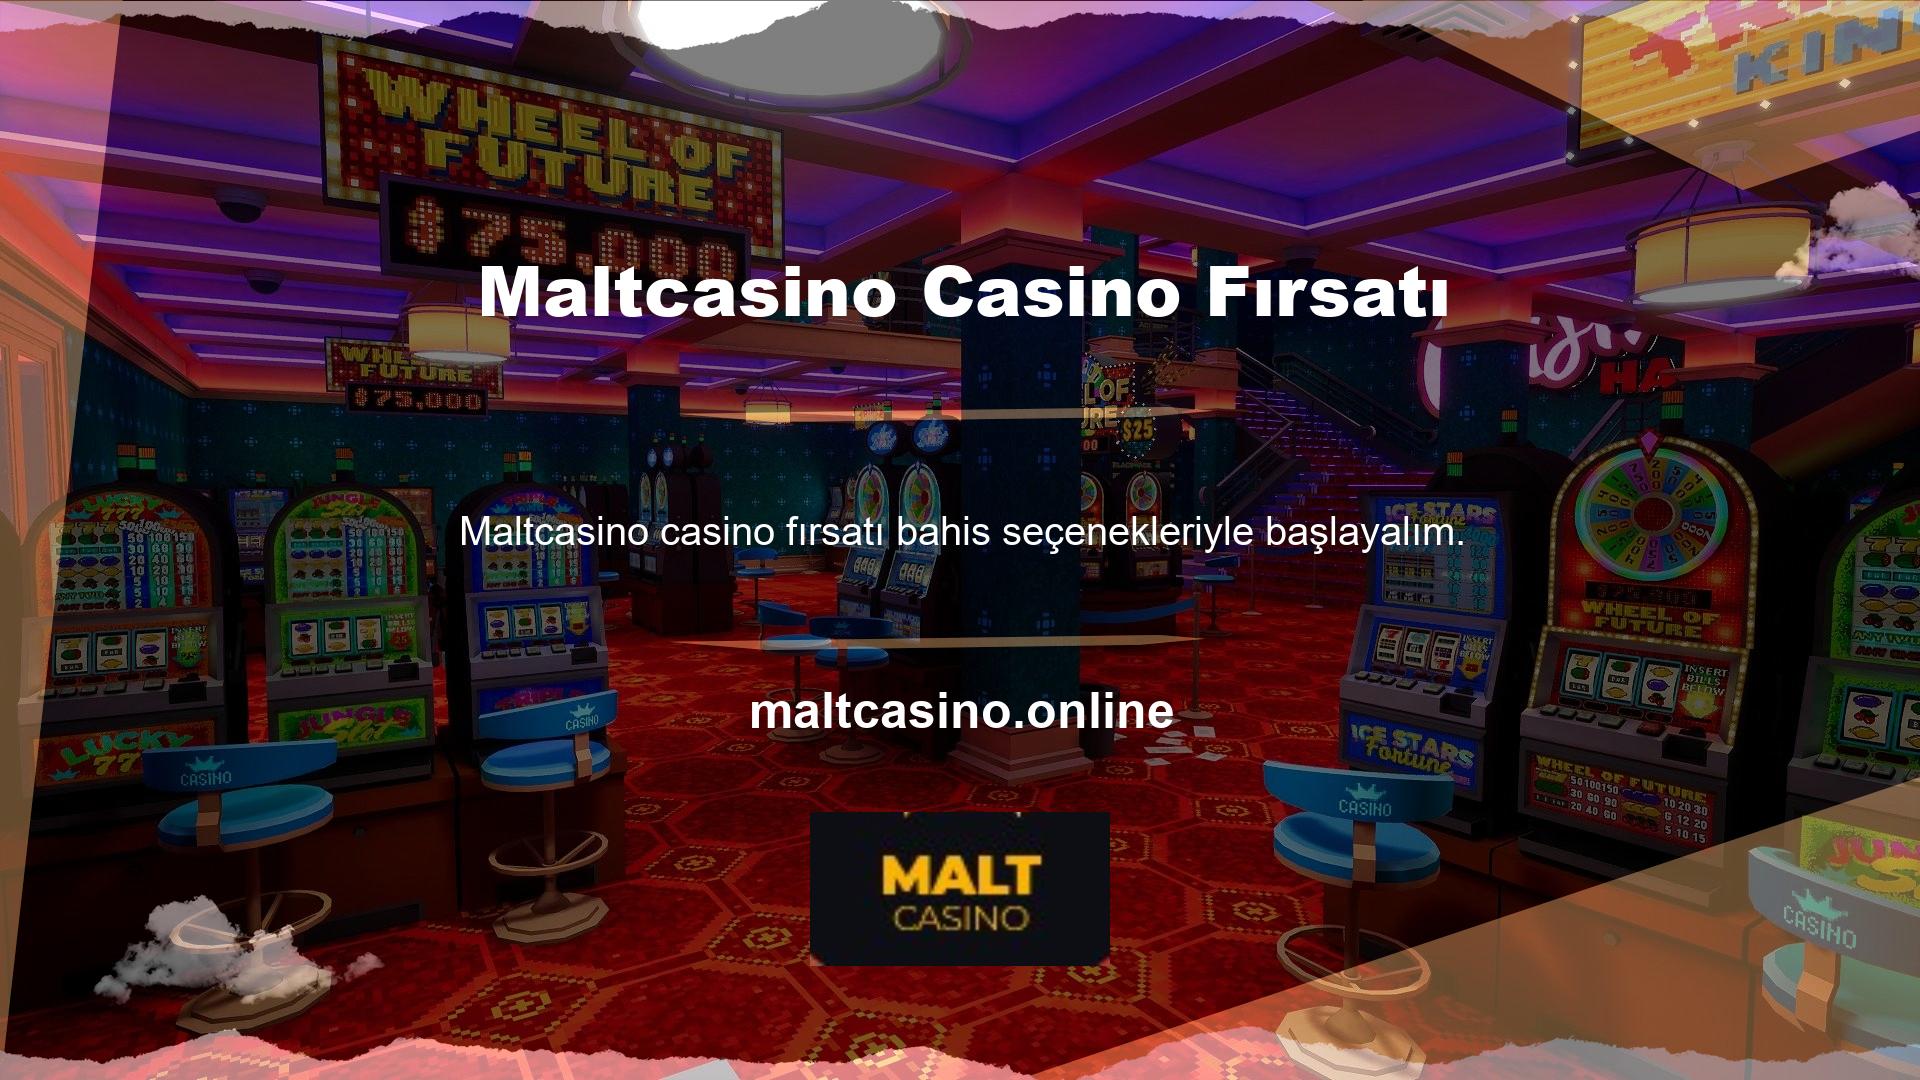 Gördüğünüz gibi bu, yasa dışı casino sitelerinin bulunduğu bir platform